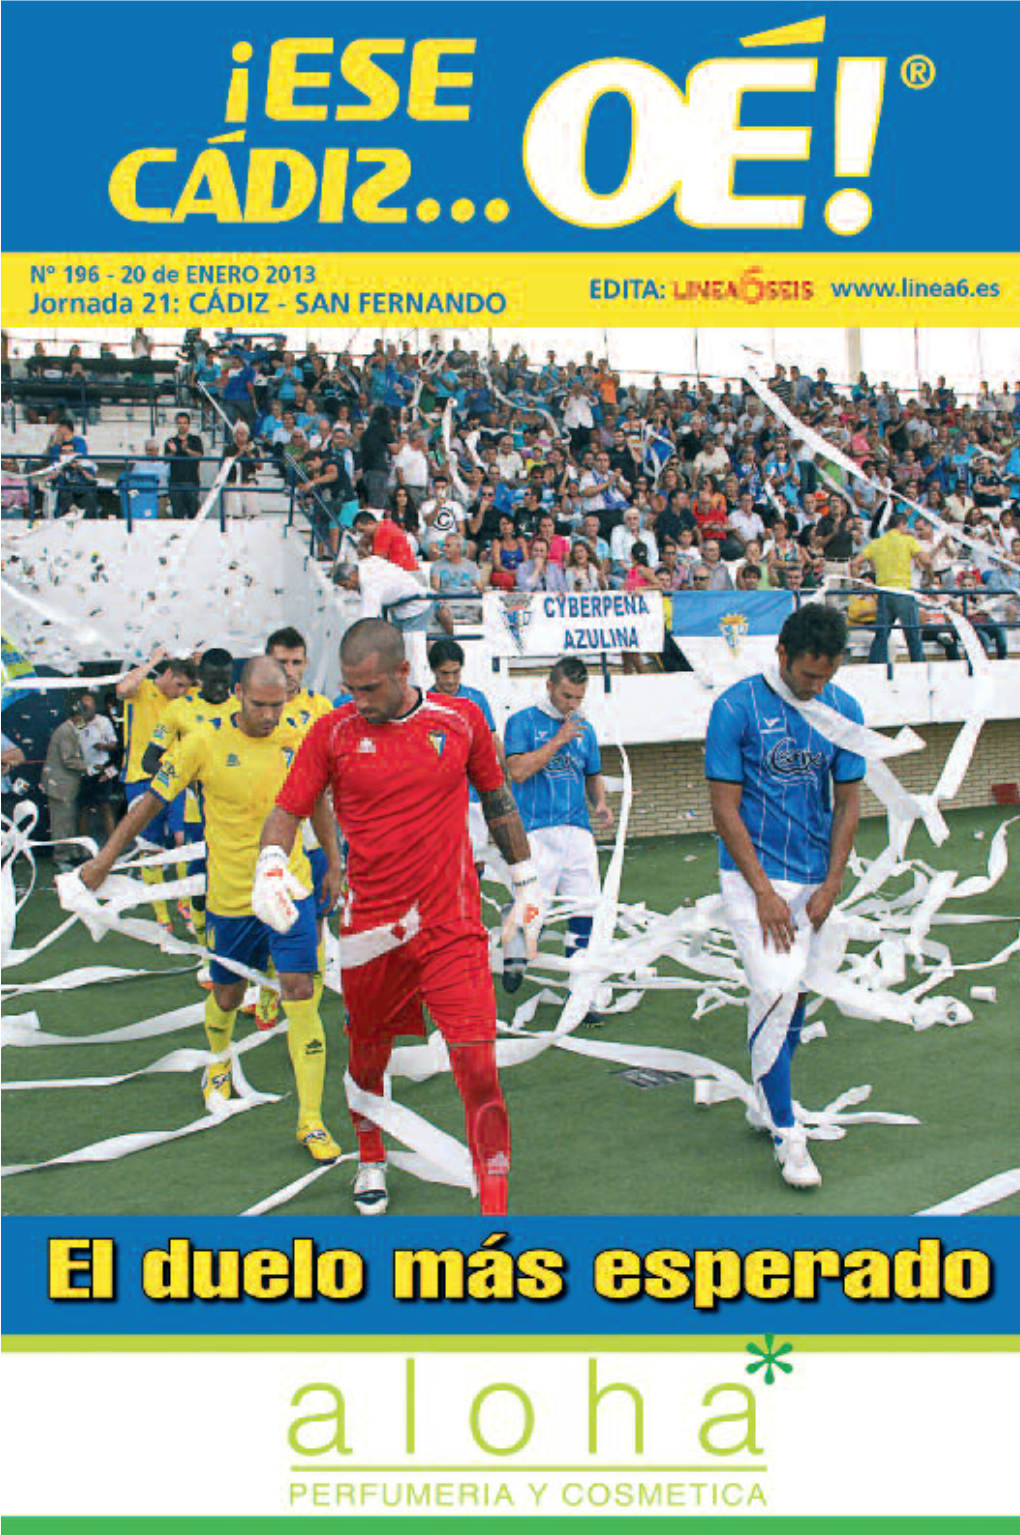 CÁDIZ Betis B – Almería B 25-11-12 Écija Bpié